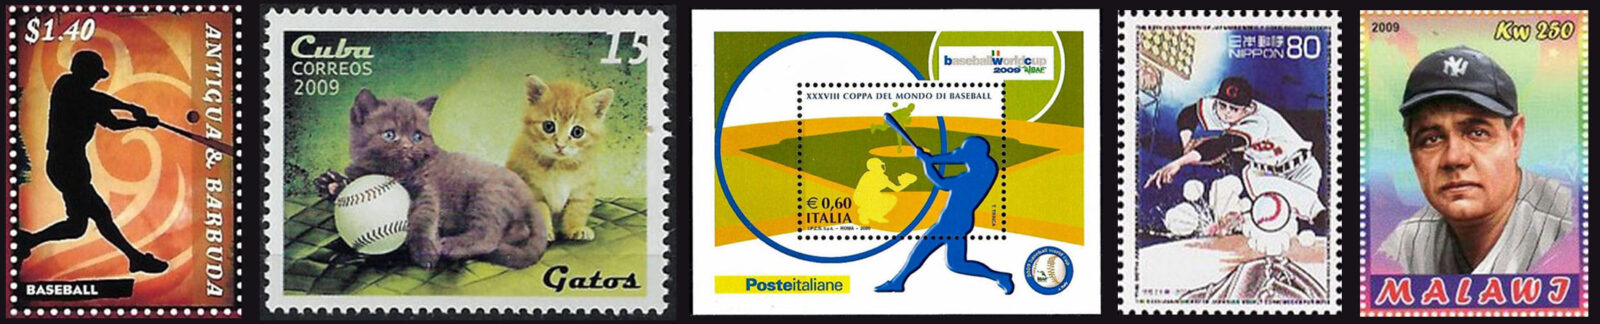 2009 Baseball Postage Stamps header